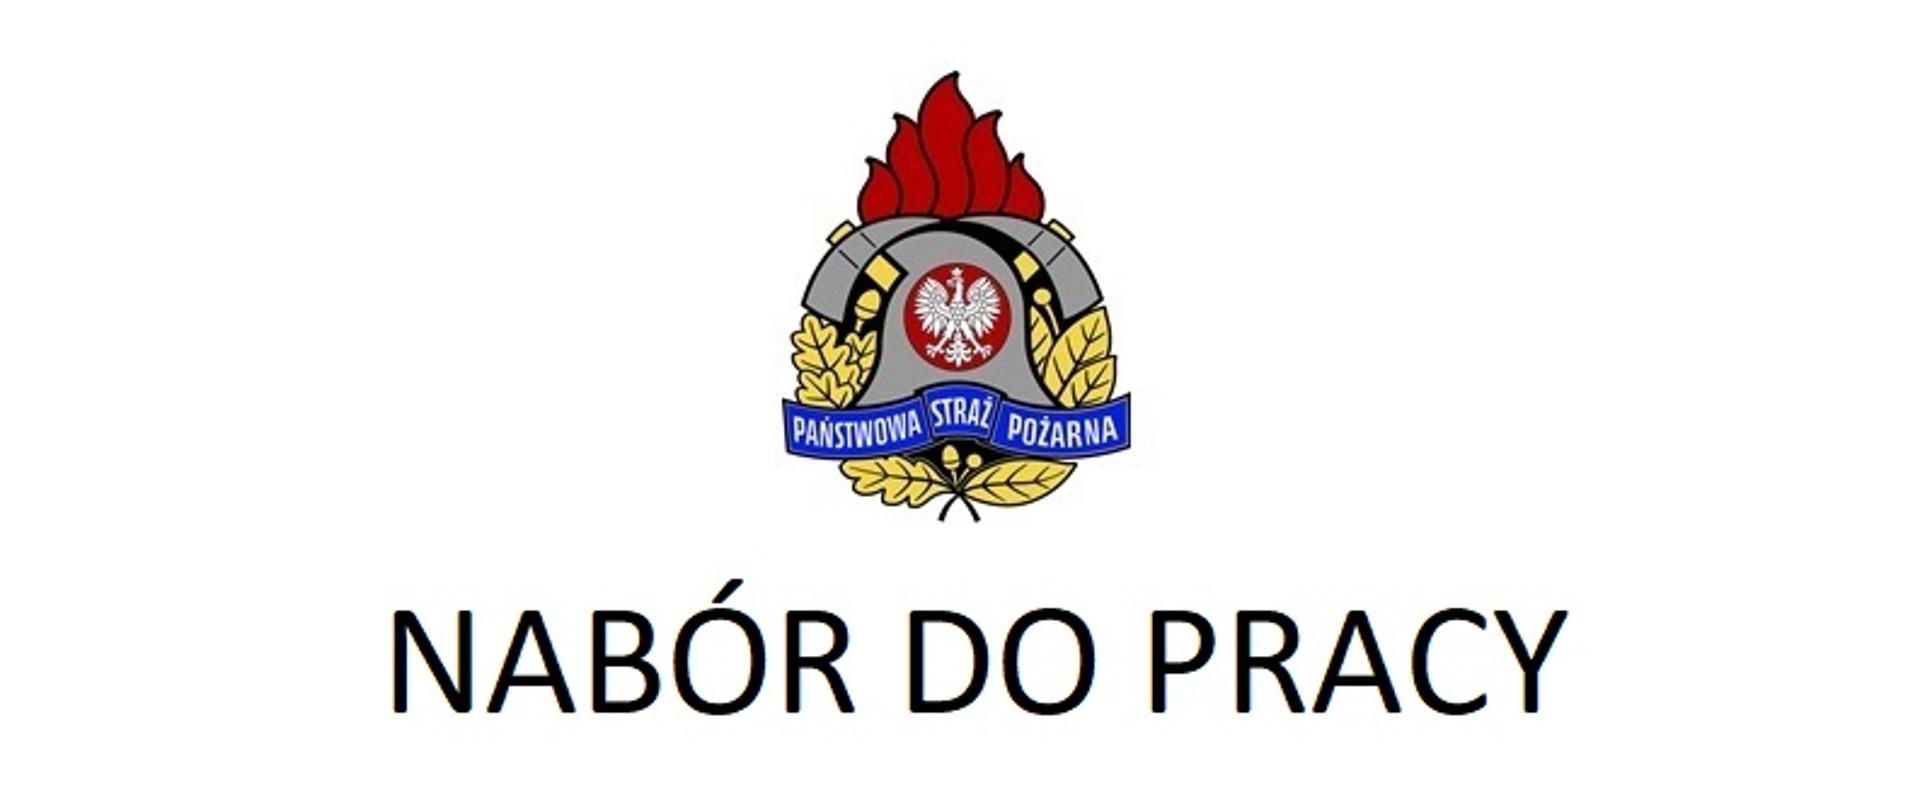 Na zdjęciu logo Państwowej Straży Pożarnej, a pod nim napis "Nabór do pracy"